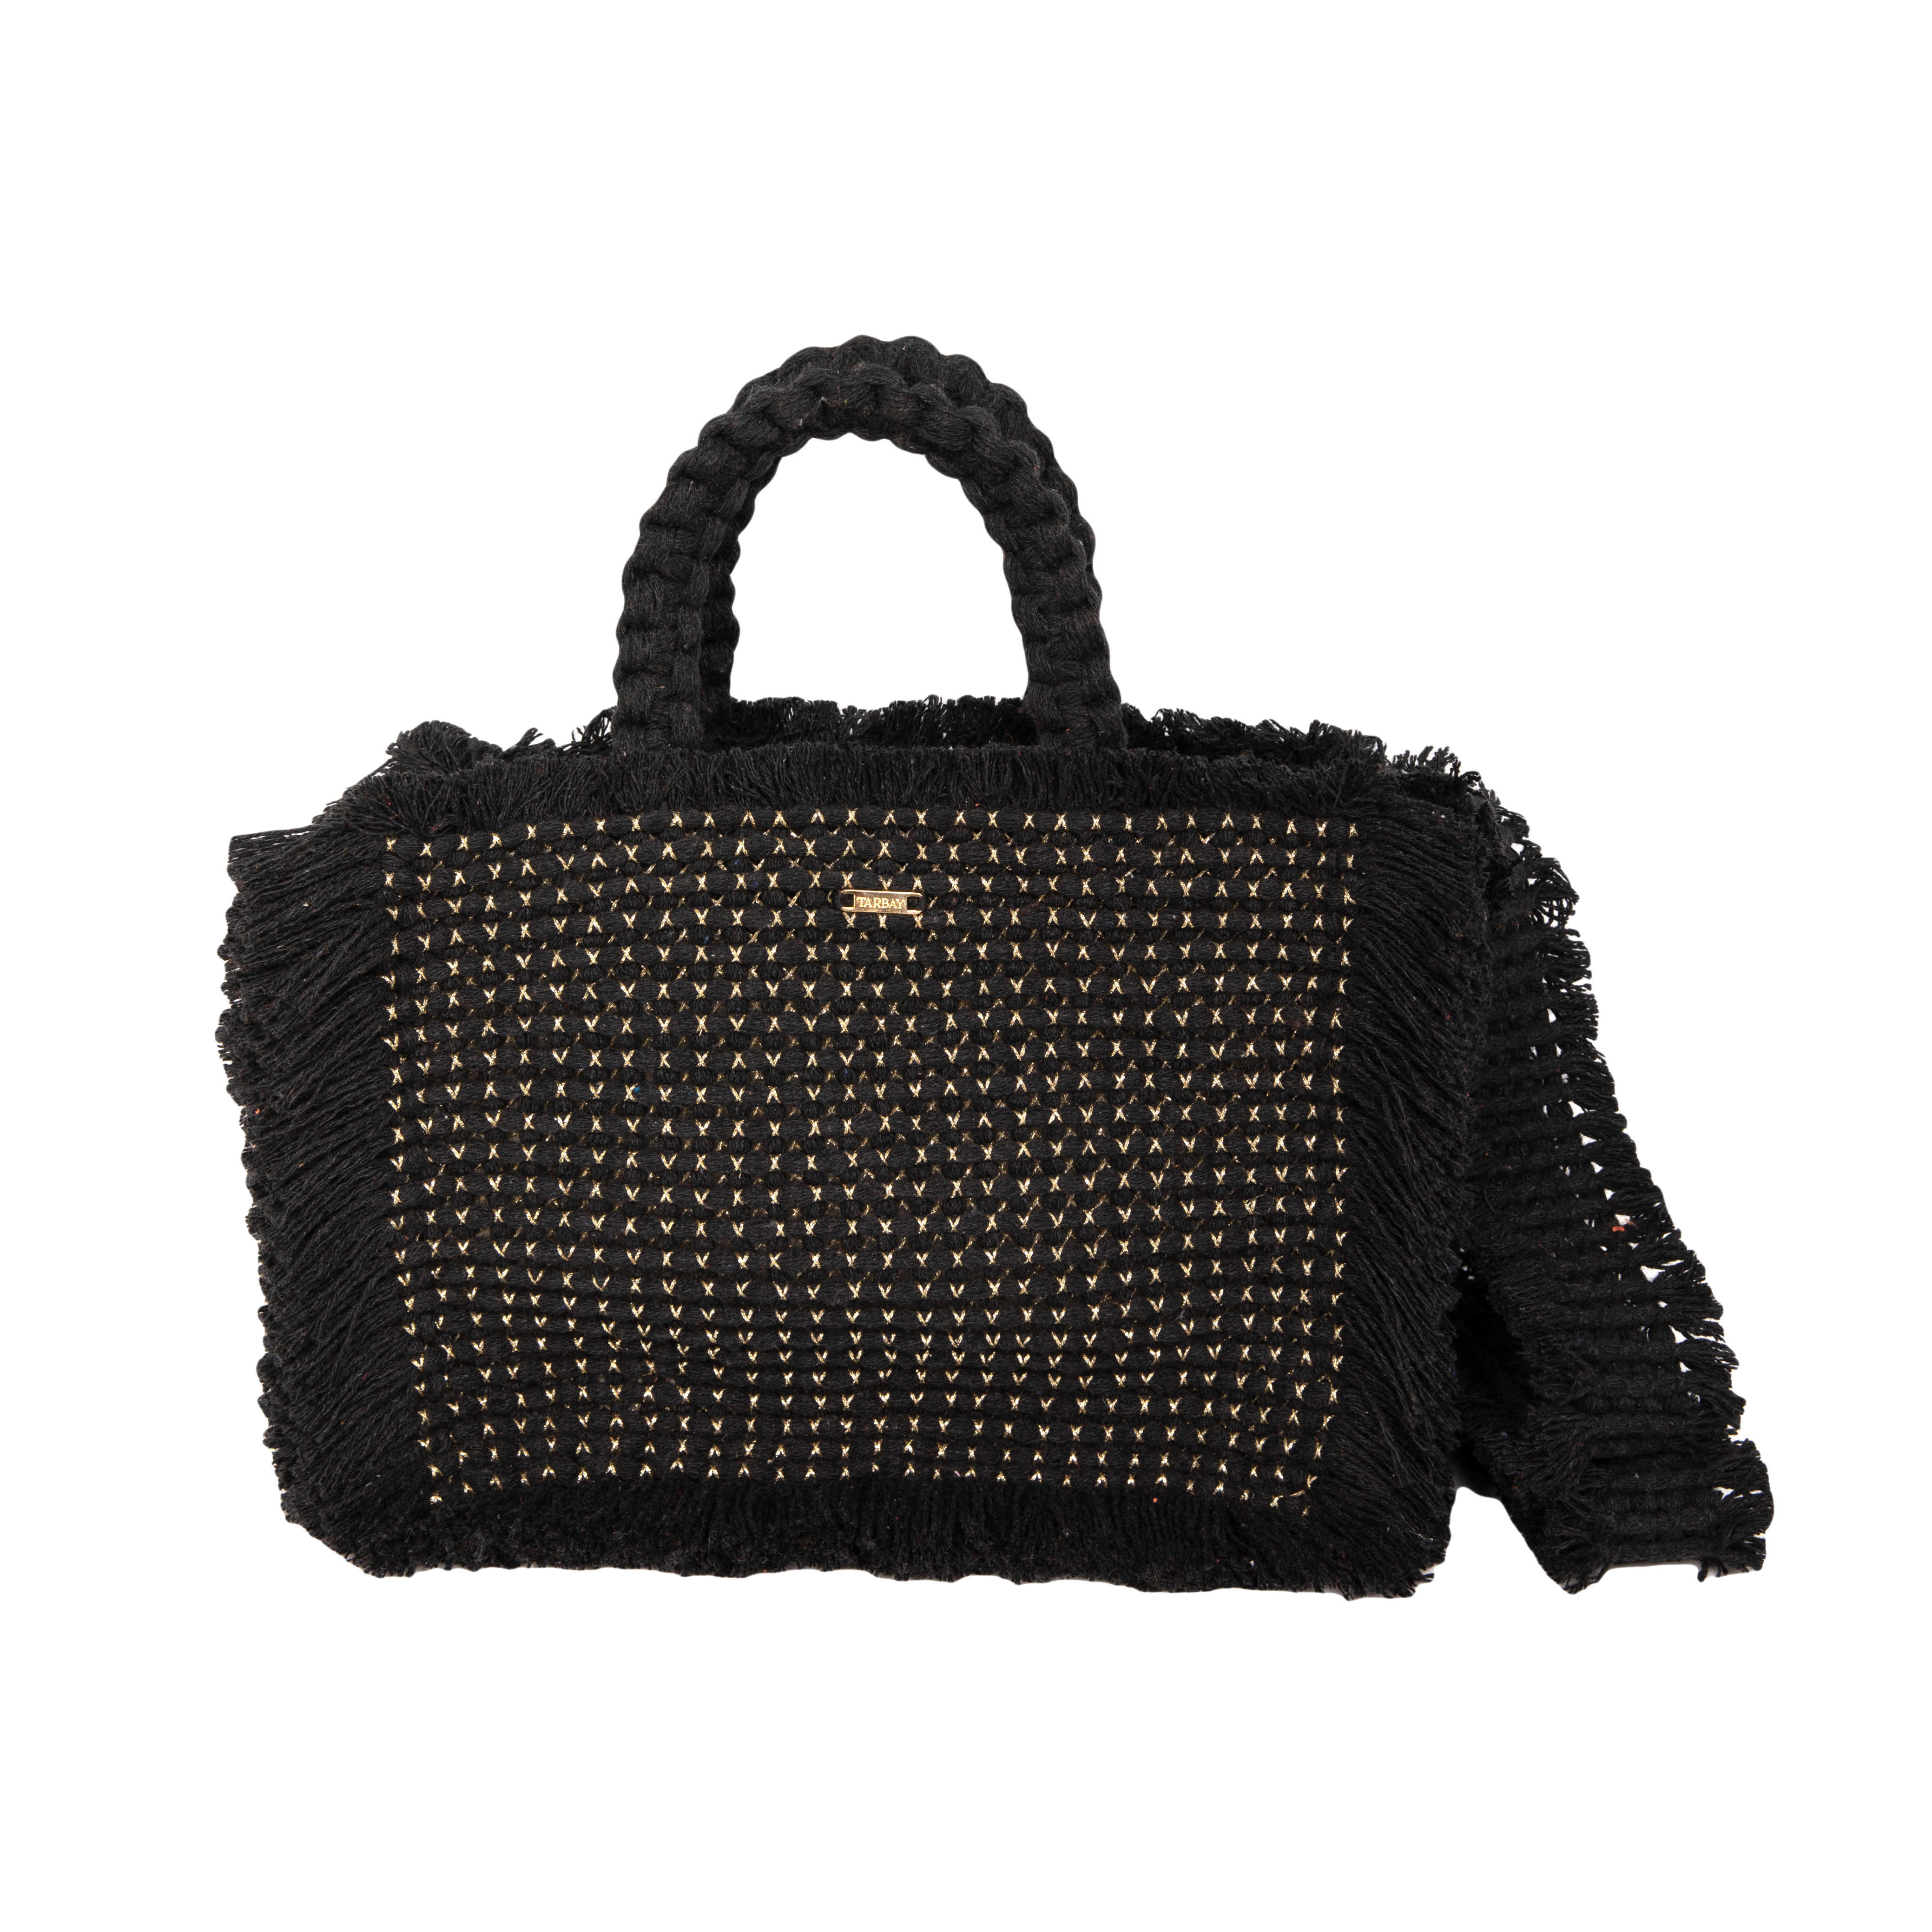 Gossypium Tote Bag Medium - Black Shoulder & Crossbody Bags TARBAY   